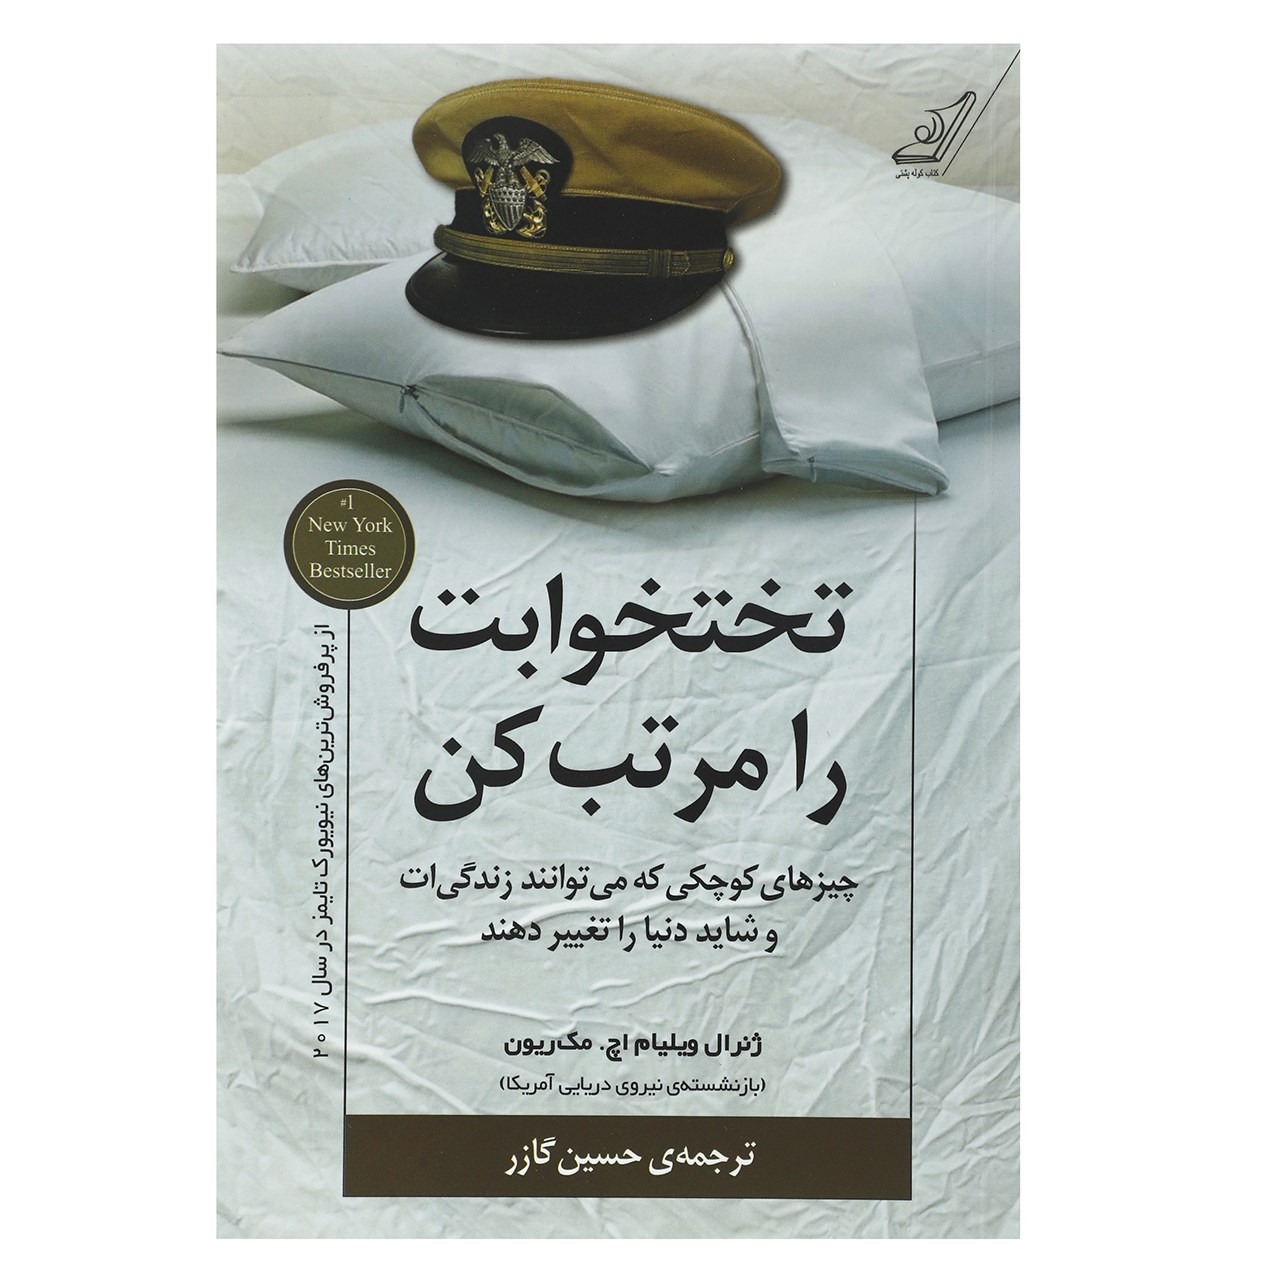 کتاب تختخ-وابت را مرتب کن اثر حسین گازر – انتشارات کتاب کوله پشتی